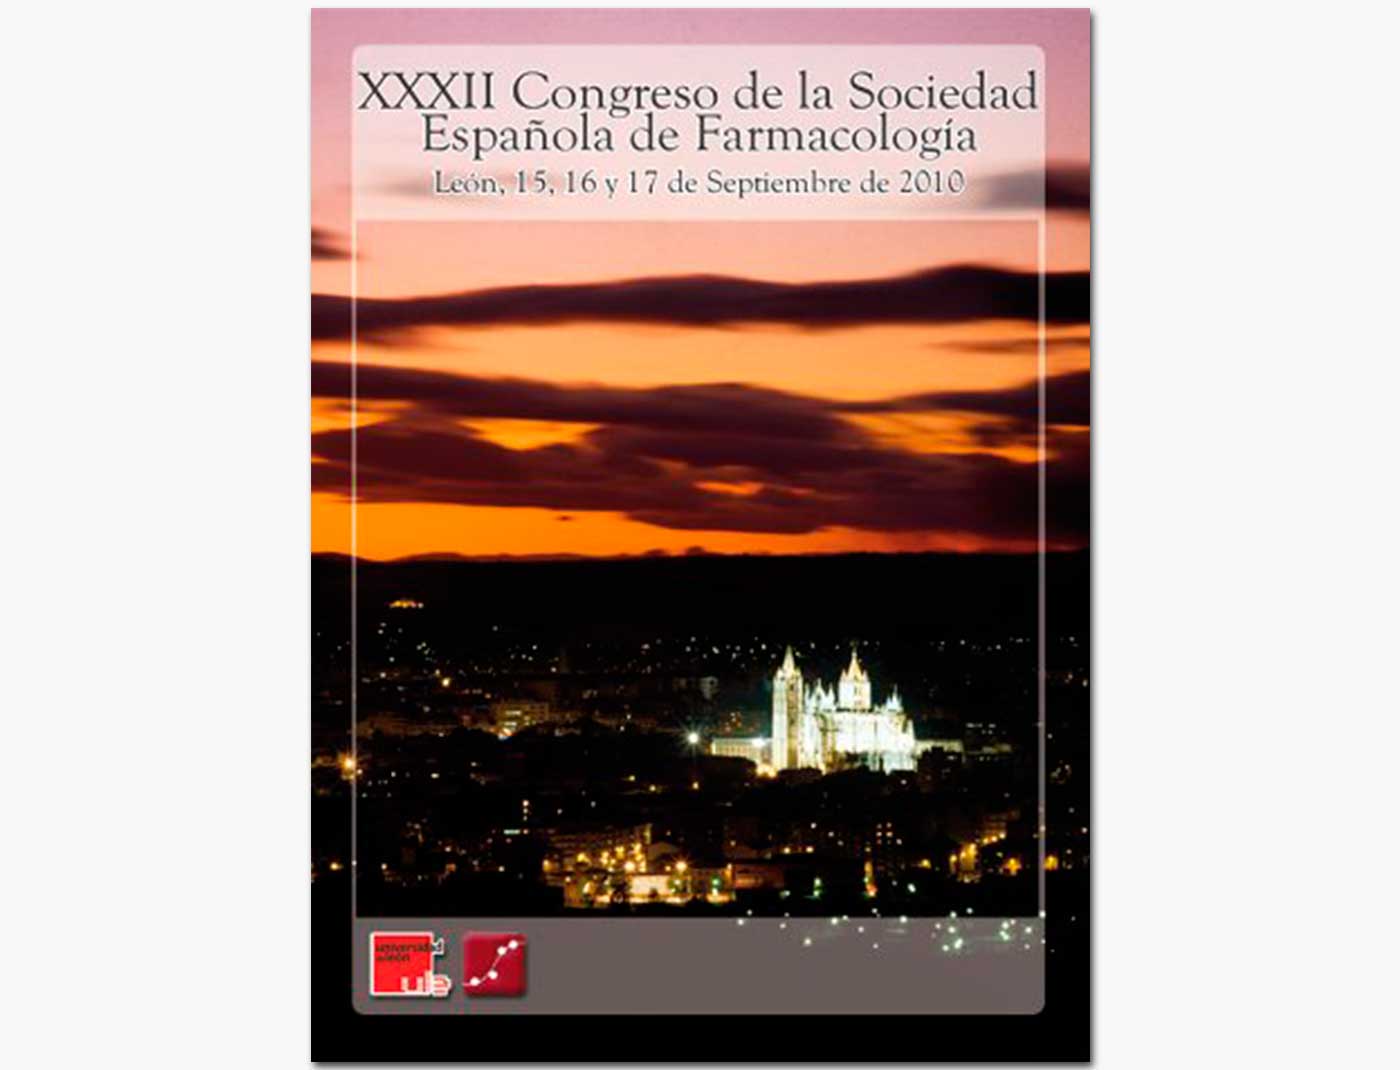 XXXII Congreso de la Sociedad Española de Farmacología